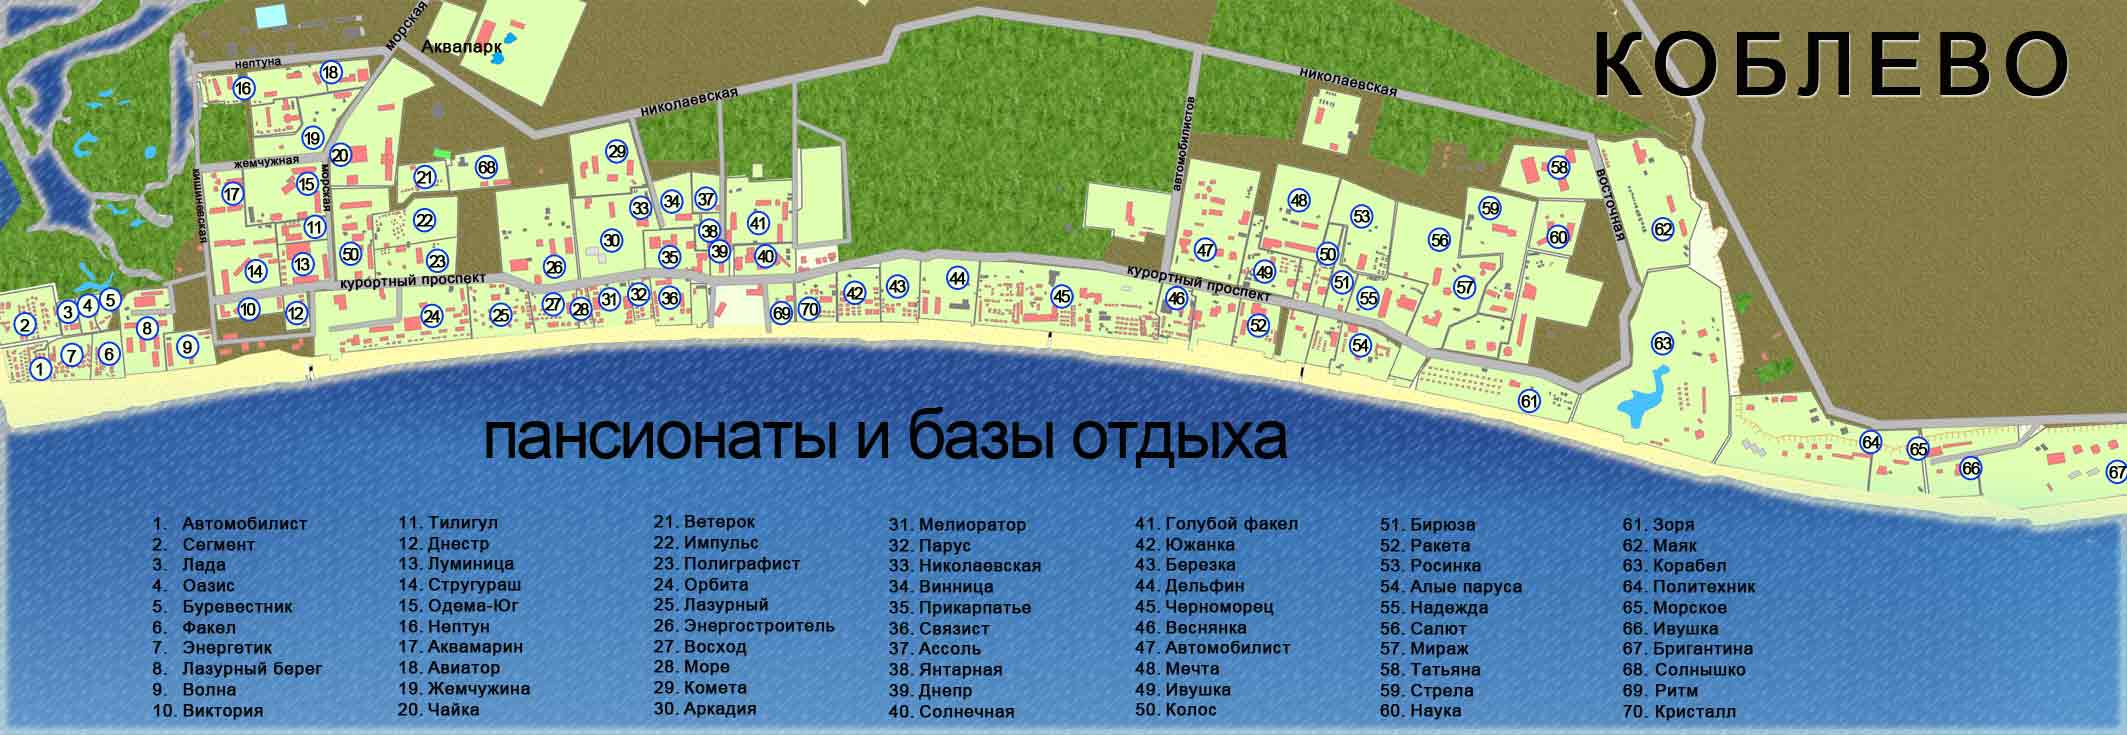 koblevo-map